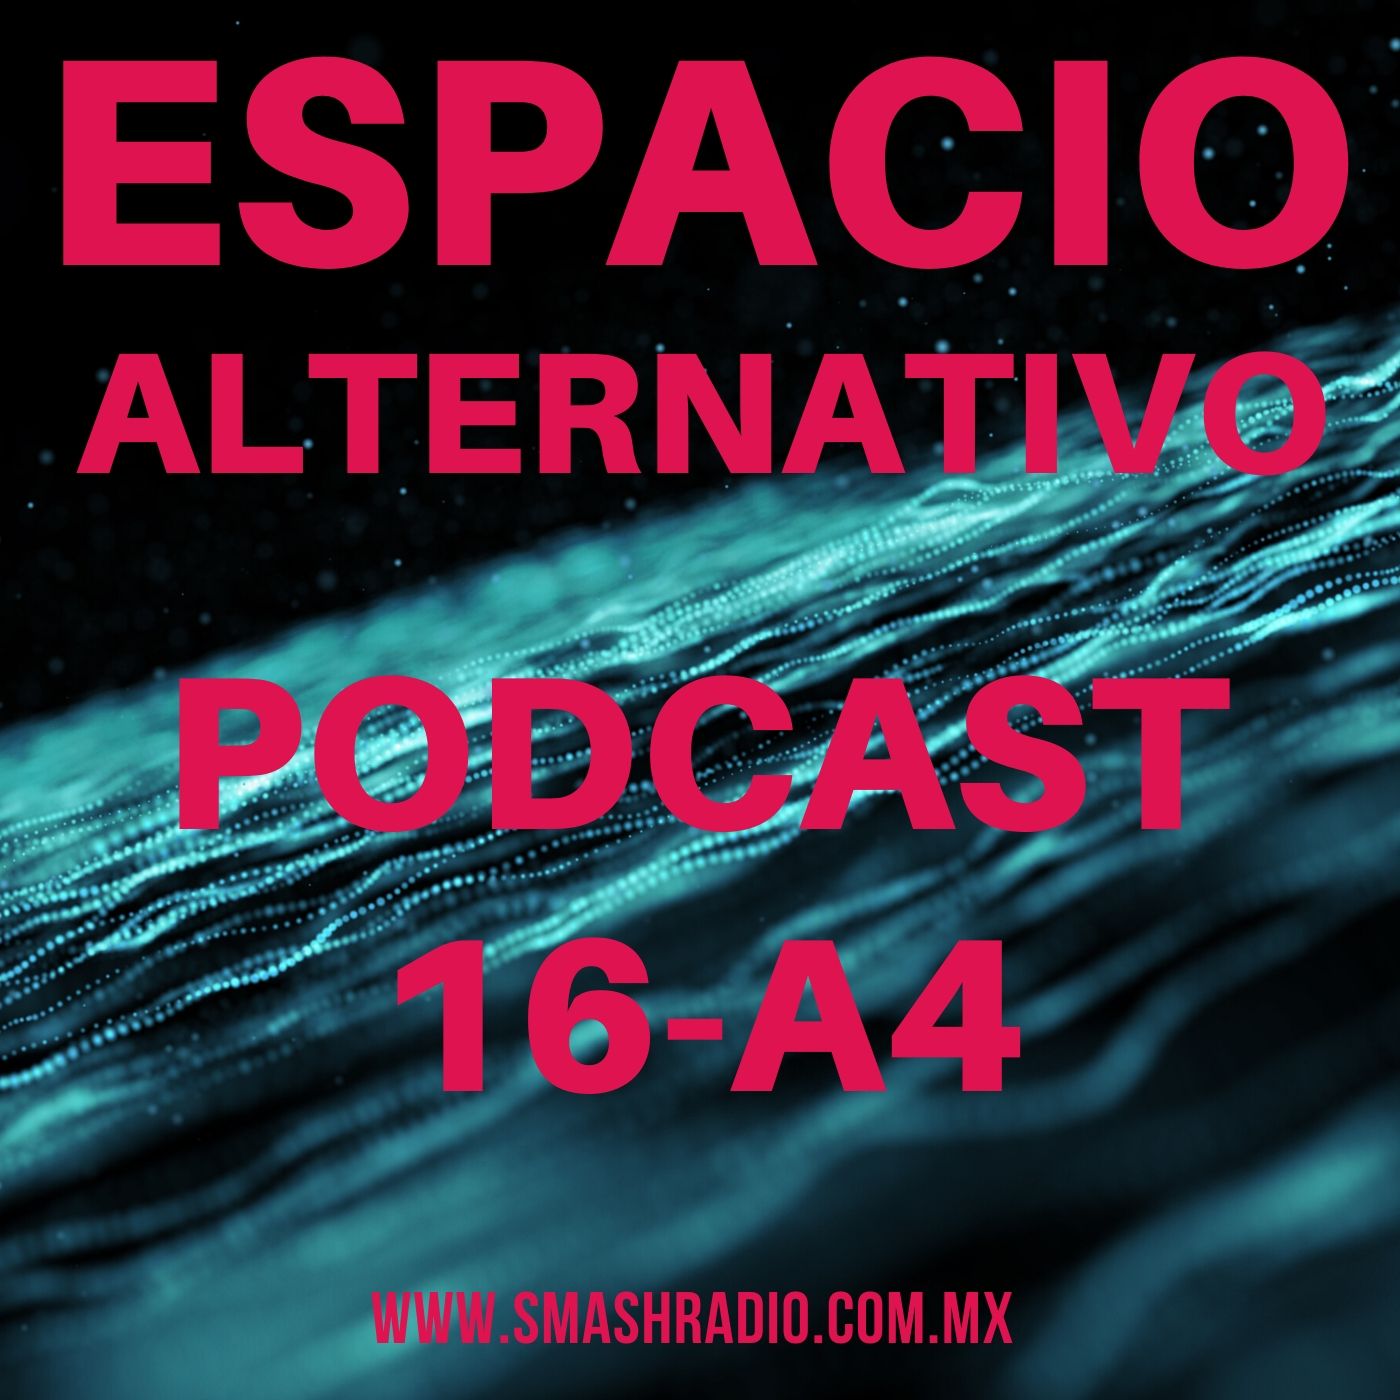 Espacio_Alternativo_Podcast_16-a4